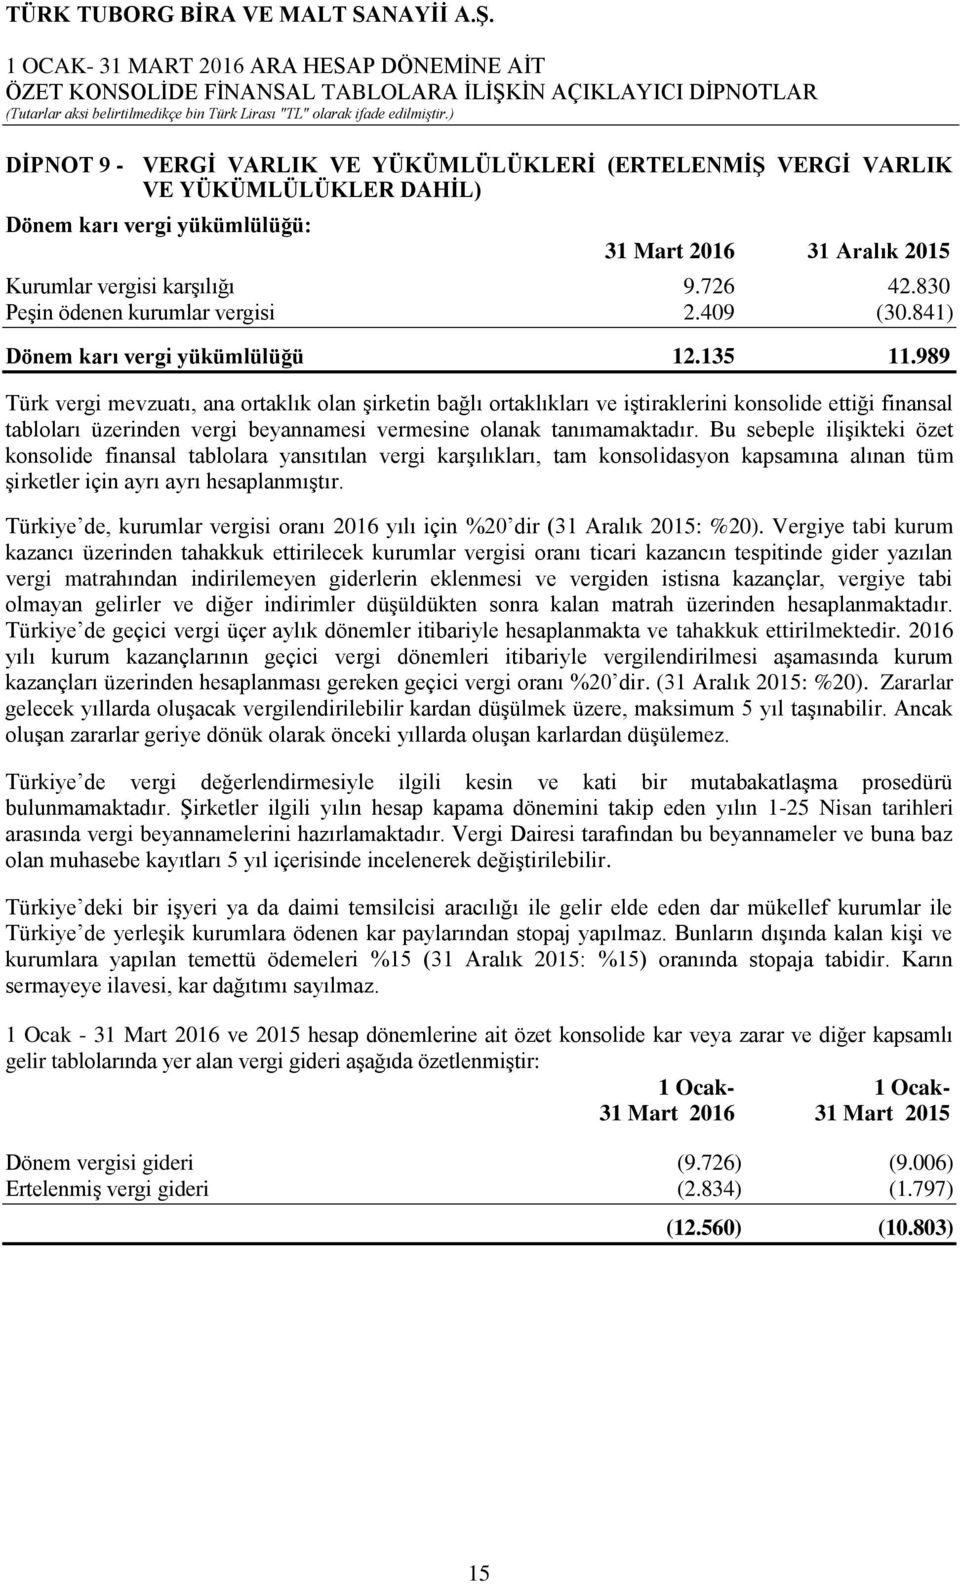 989 Türk vergi mevzuatı, ana ortaklık olan şirketin bağlı ortaklıkları ve iştiraklerini konsolide ettiği finansal tabloları üzerinden vergi beyannamesi vermesine olanak tanımamaktadır.